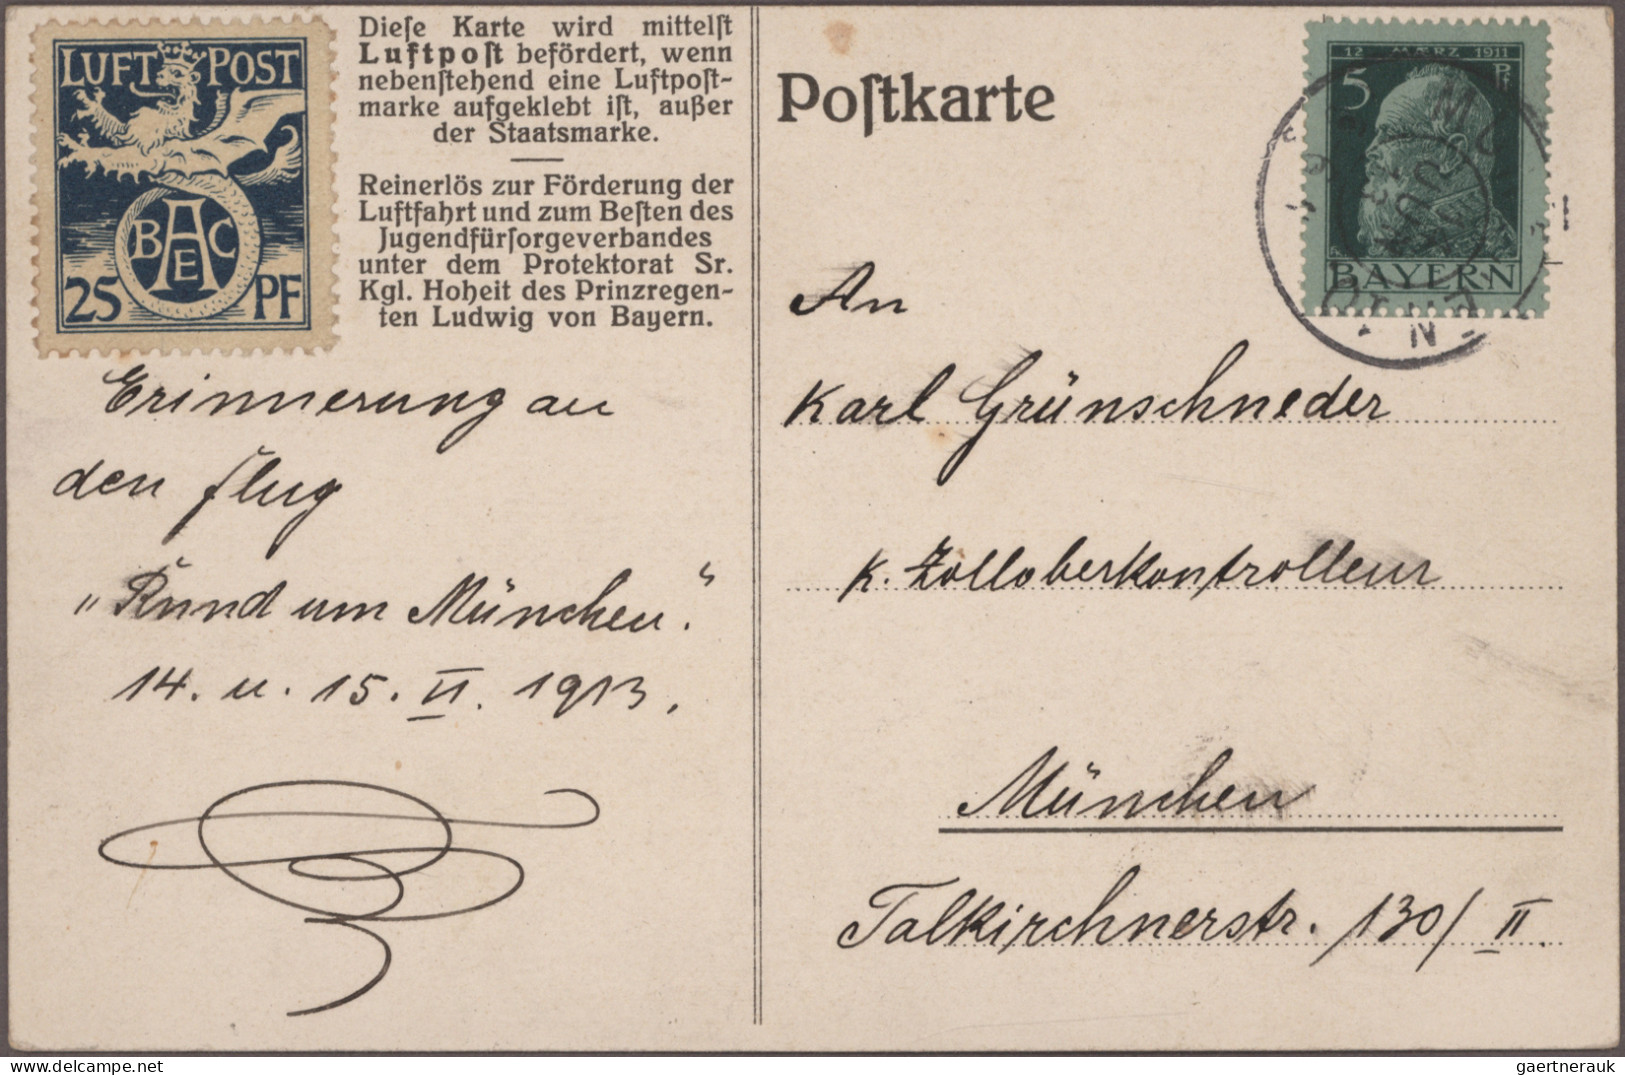 Bayern - Ganzsachen: 1880/1920 (ca.), Partie von ca. 120 gebrauchten und ungebra